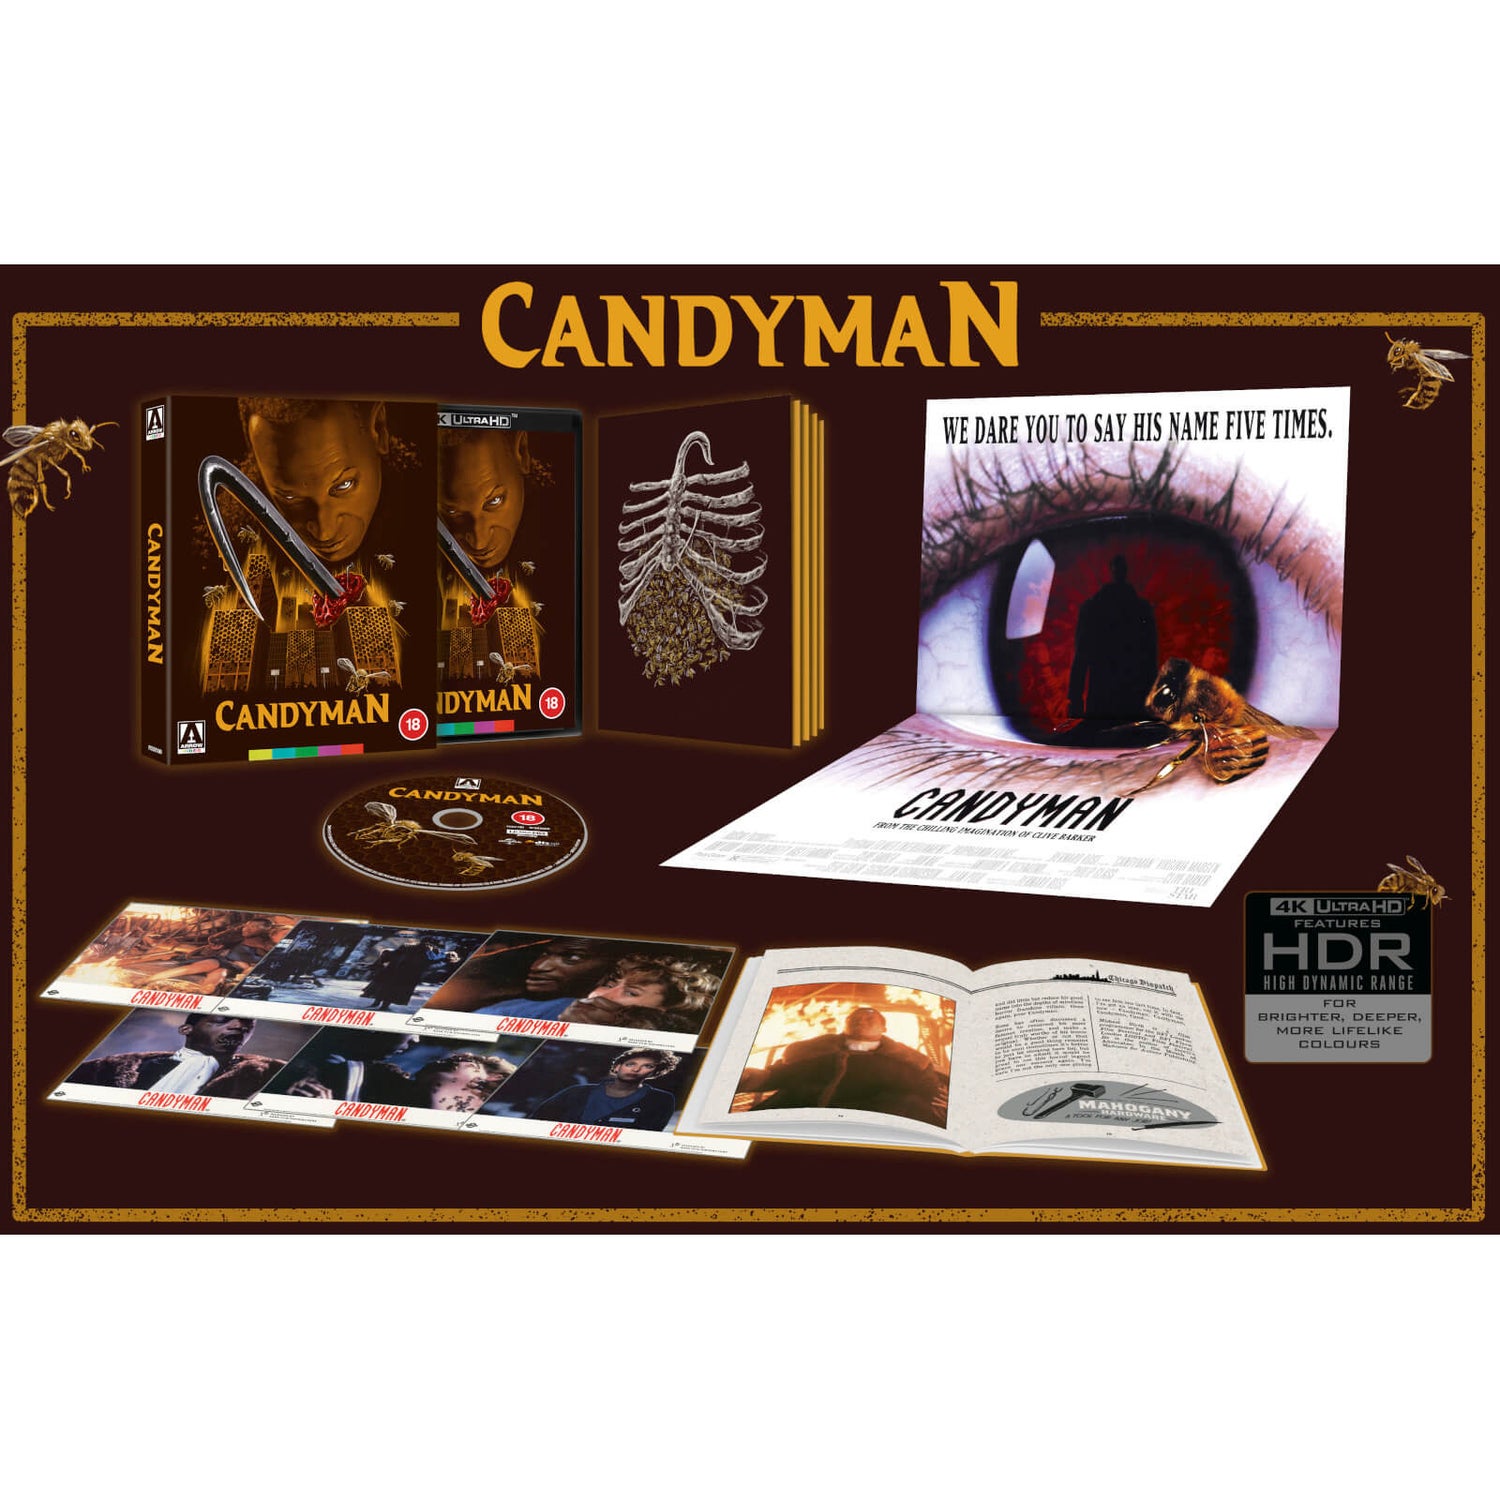 Candyman Limited Edition 4K UHD